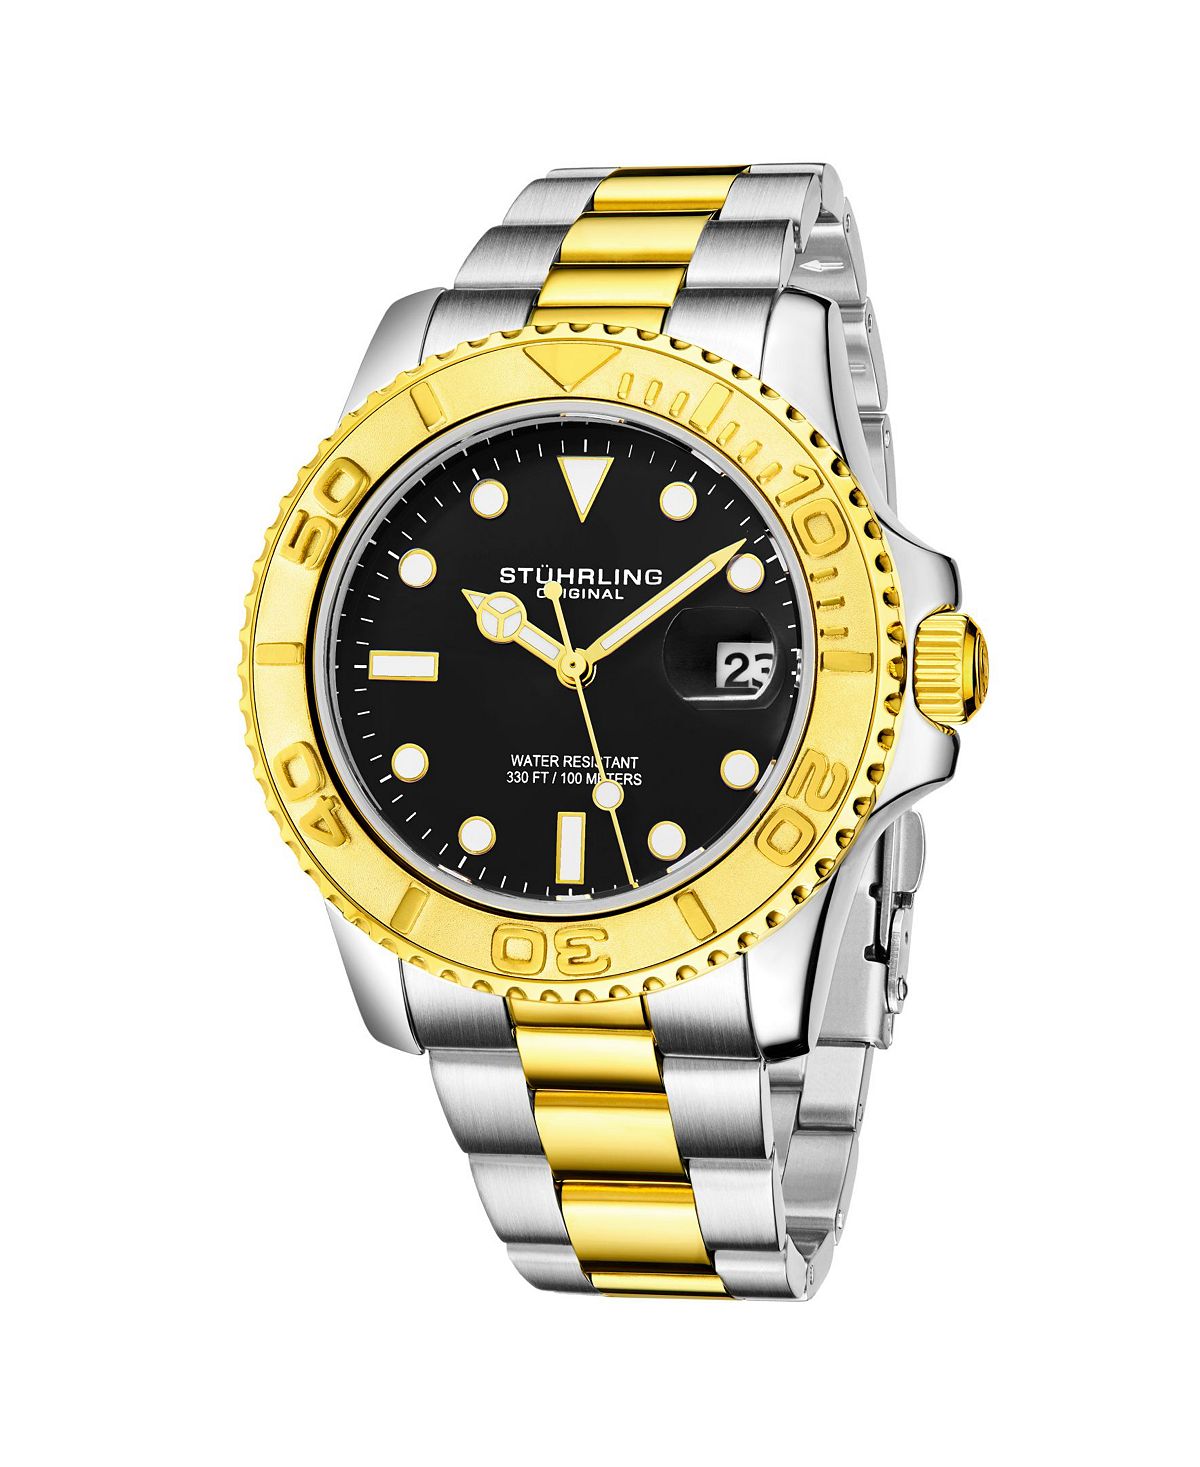 Мужские часы-браслет из нержавеющей стали золото-серебристого цвета 42 мм Stuhrling женские часы браслет из нержавеющей стали золото серебристого цвета 31 мм stuhrling золотой